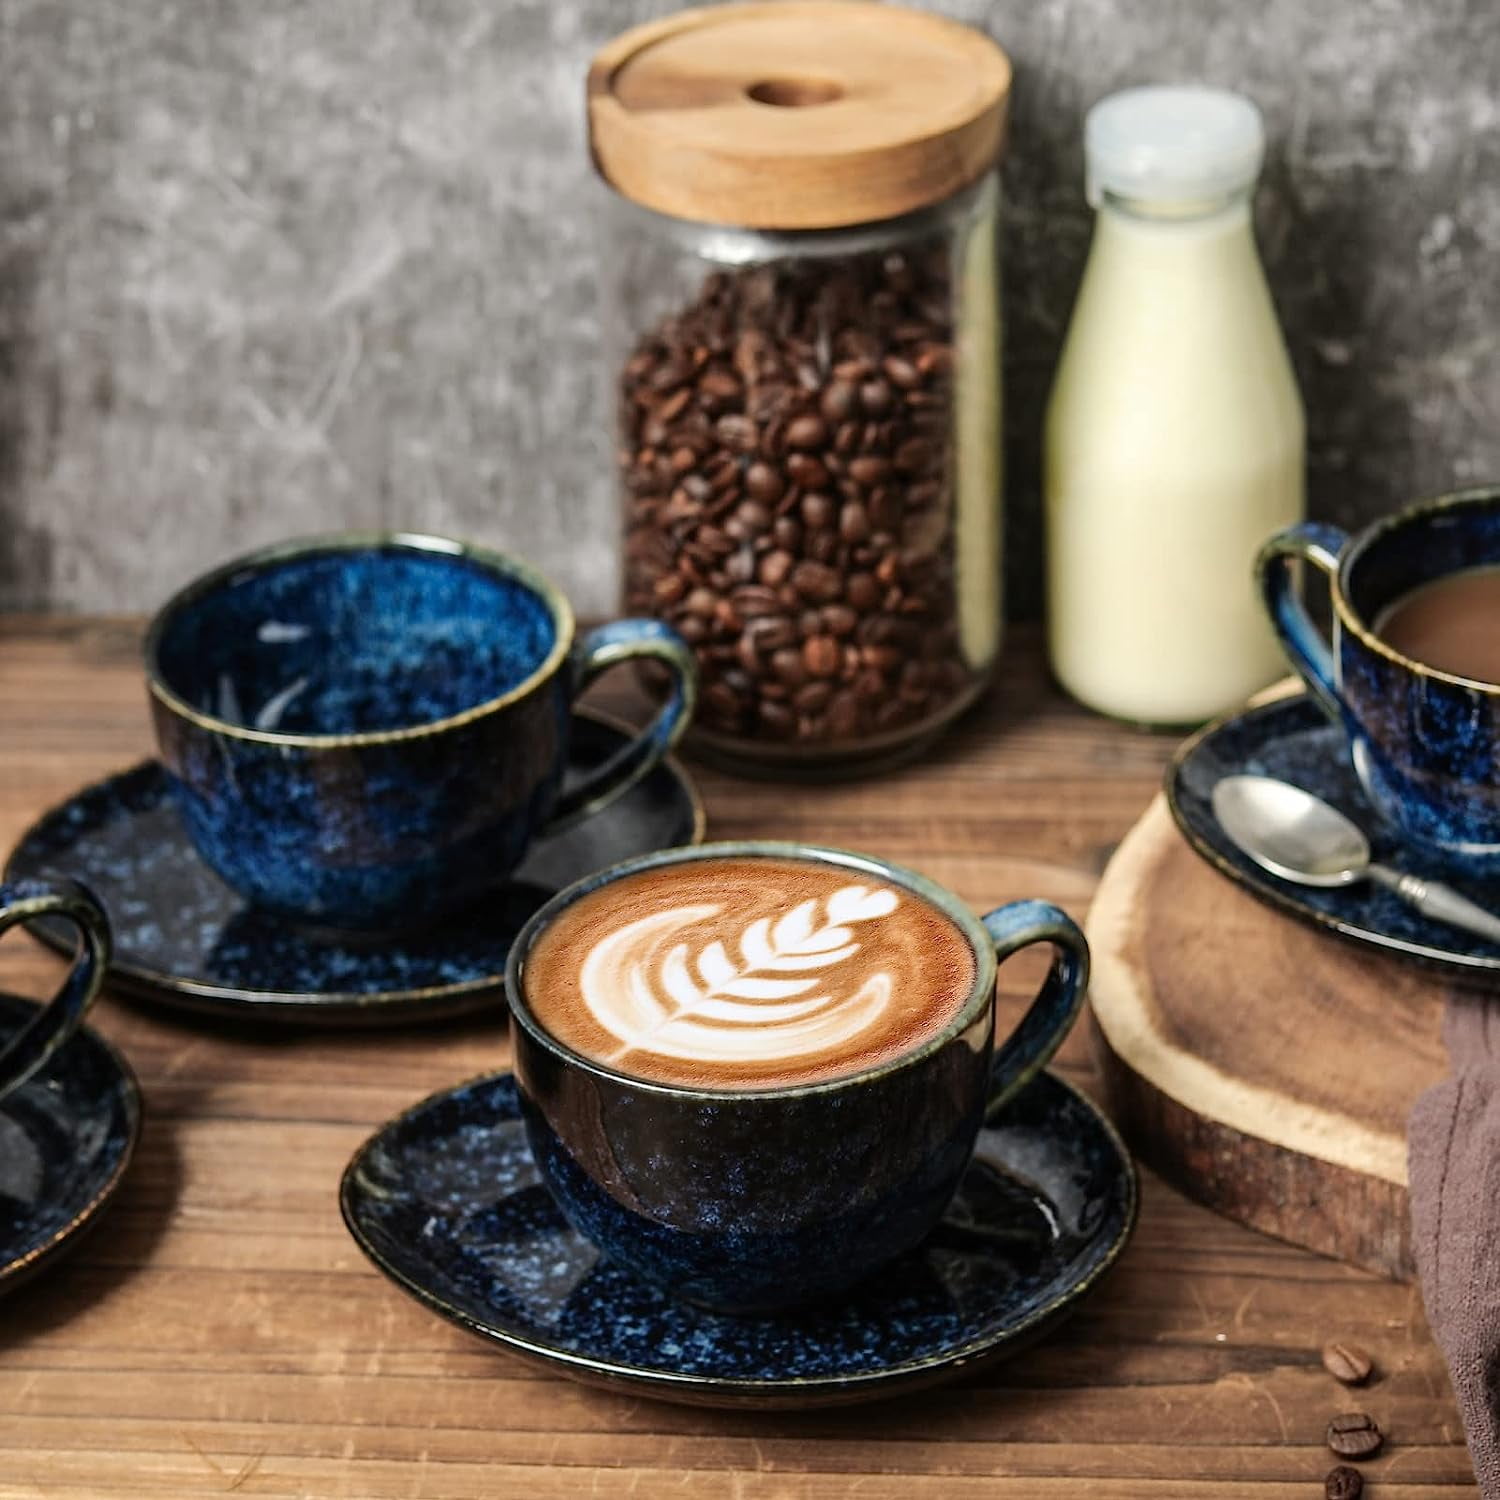 Tasse double paroi 310ML Espresso - Café au lait - Cappuccino - Sunday